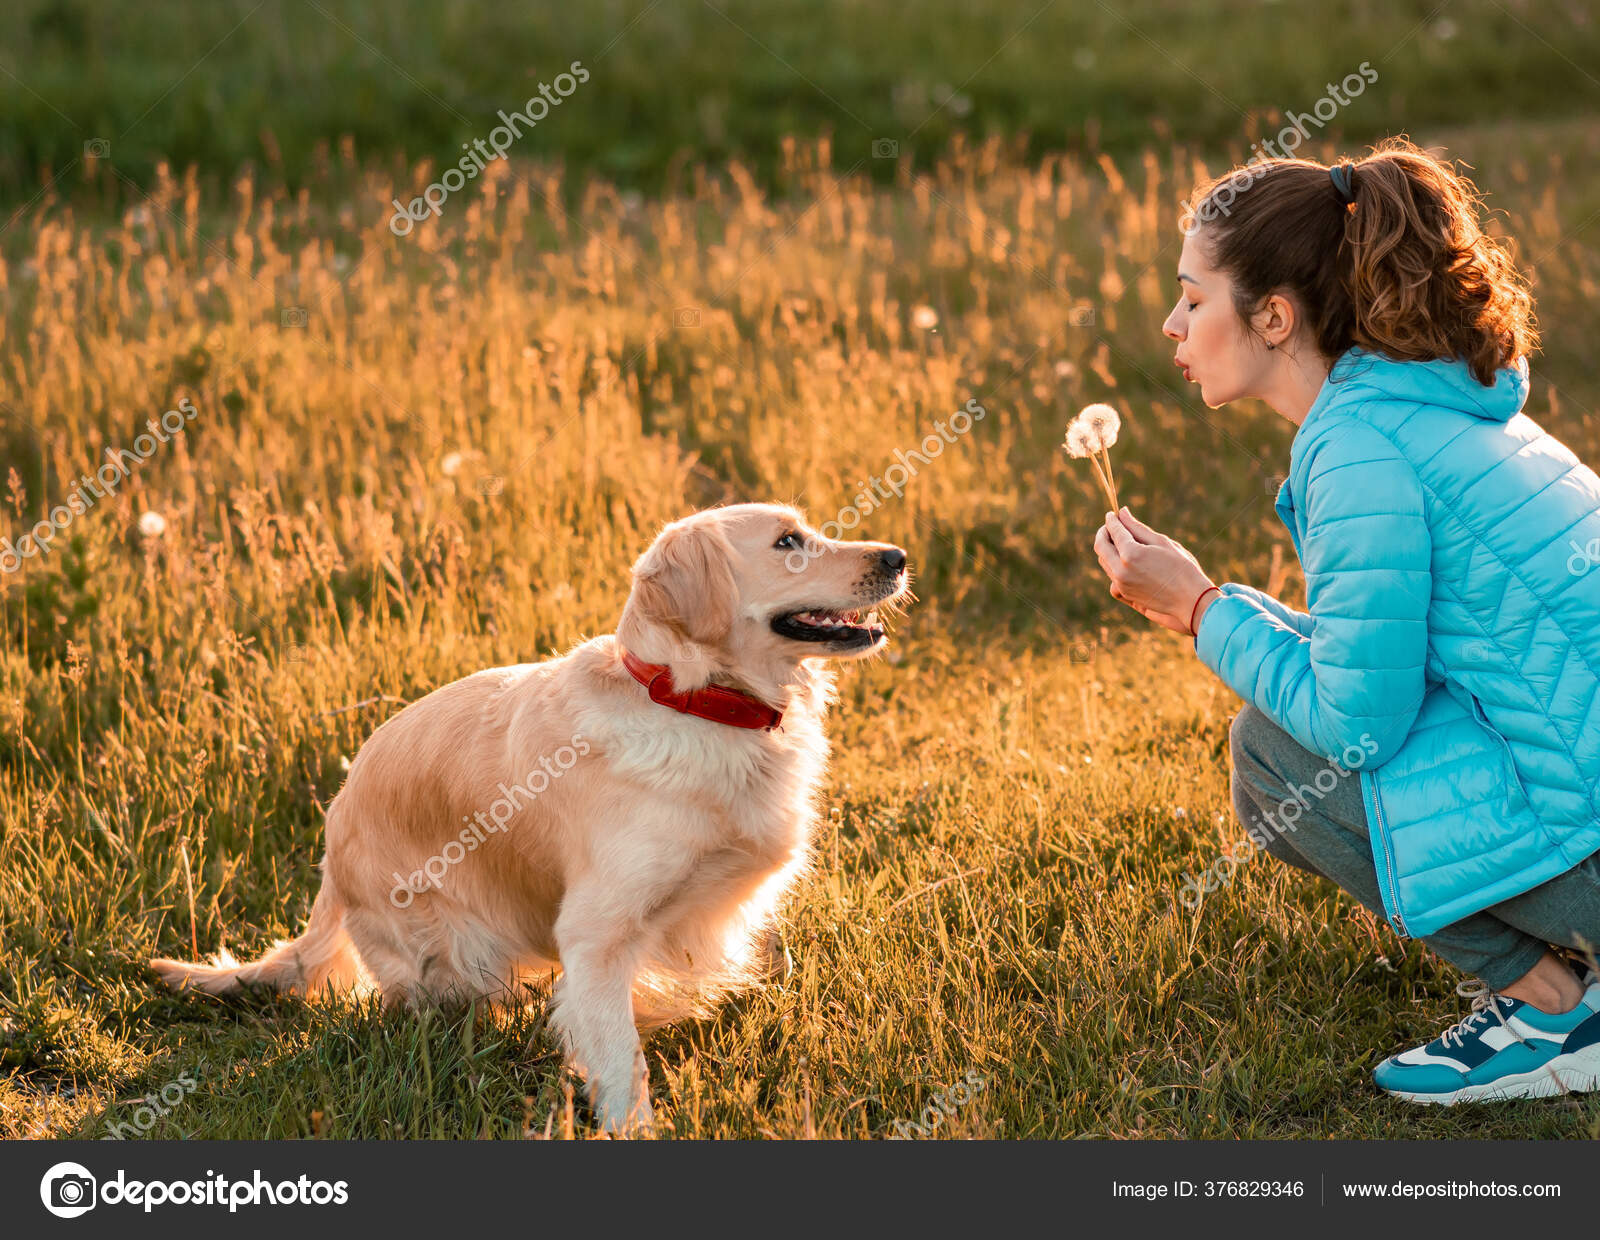 Girl blows dog